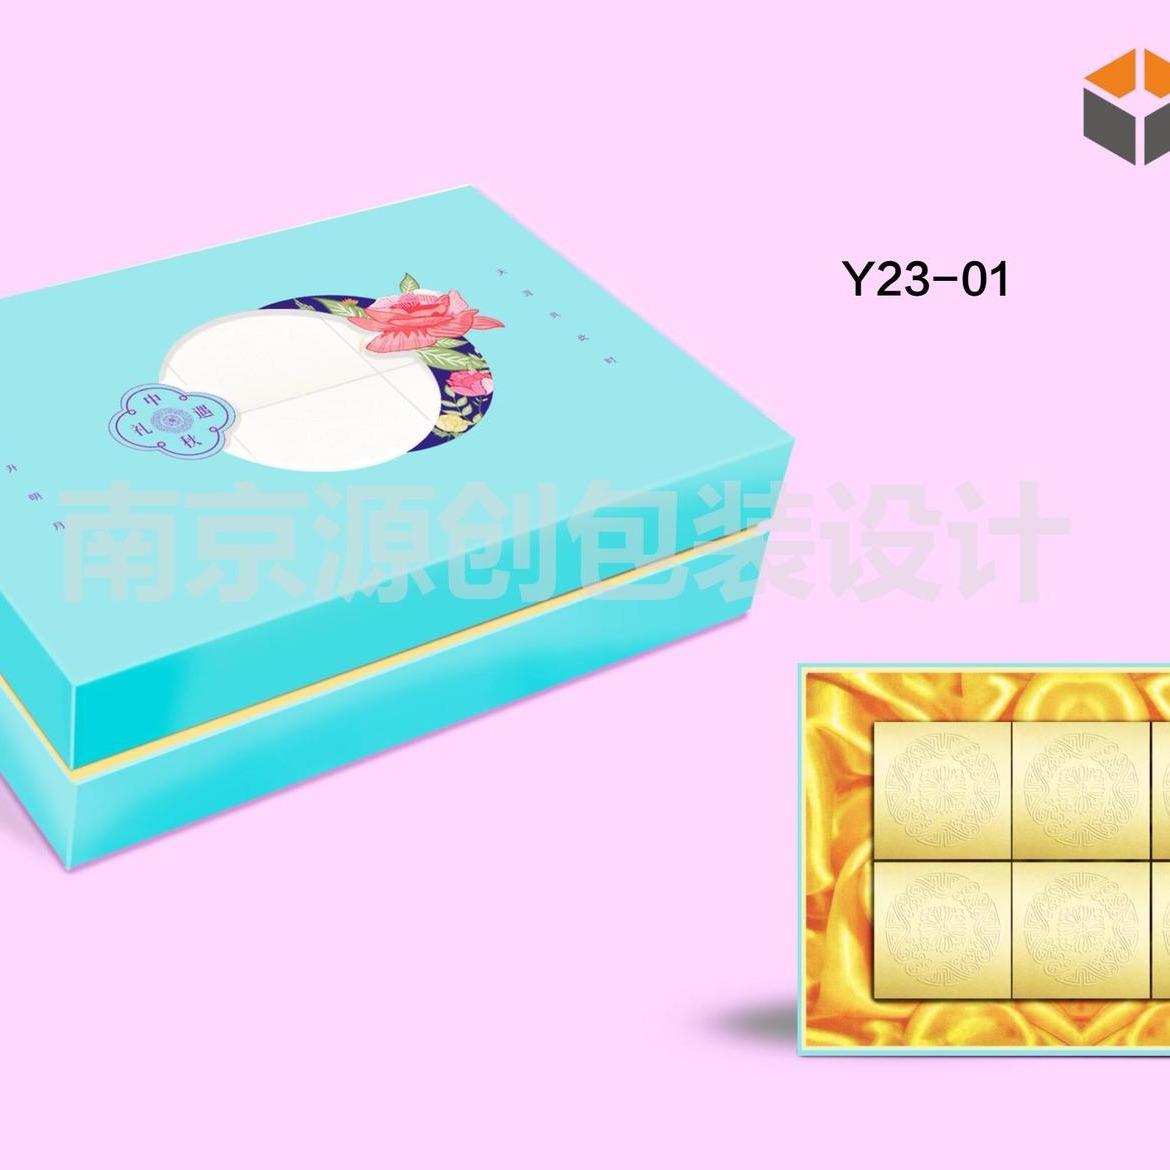 月饼盒订做 月饼盒定做 南京月饼包装盒 月饼包装礼盒 专业生产加工月饼盒 月饼礼盒厂家图片